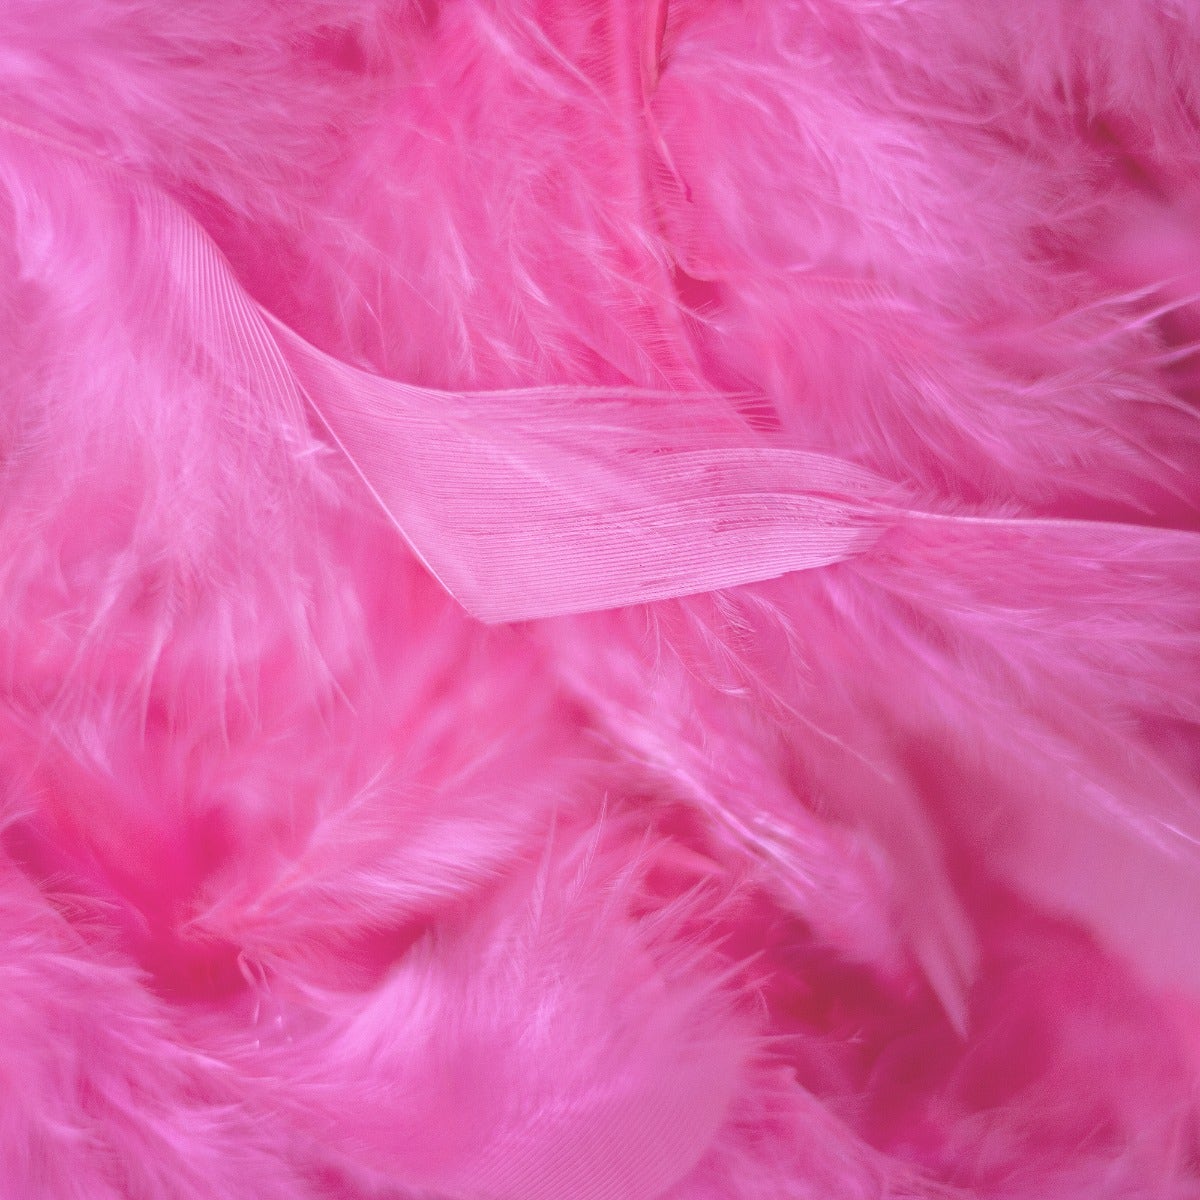 Chandelle Feather Boa - Medium Weight - Pink Orient